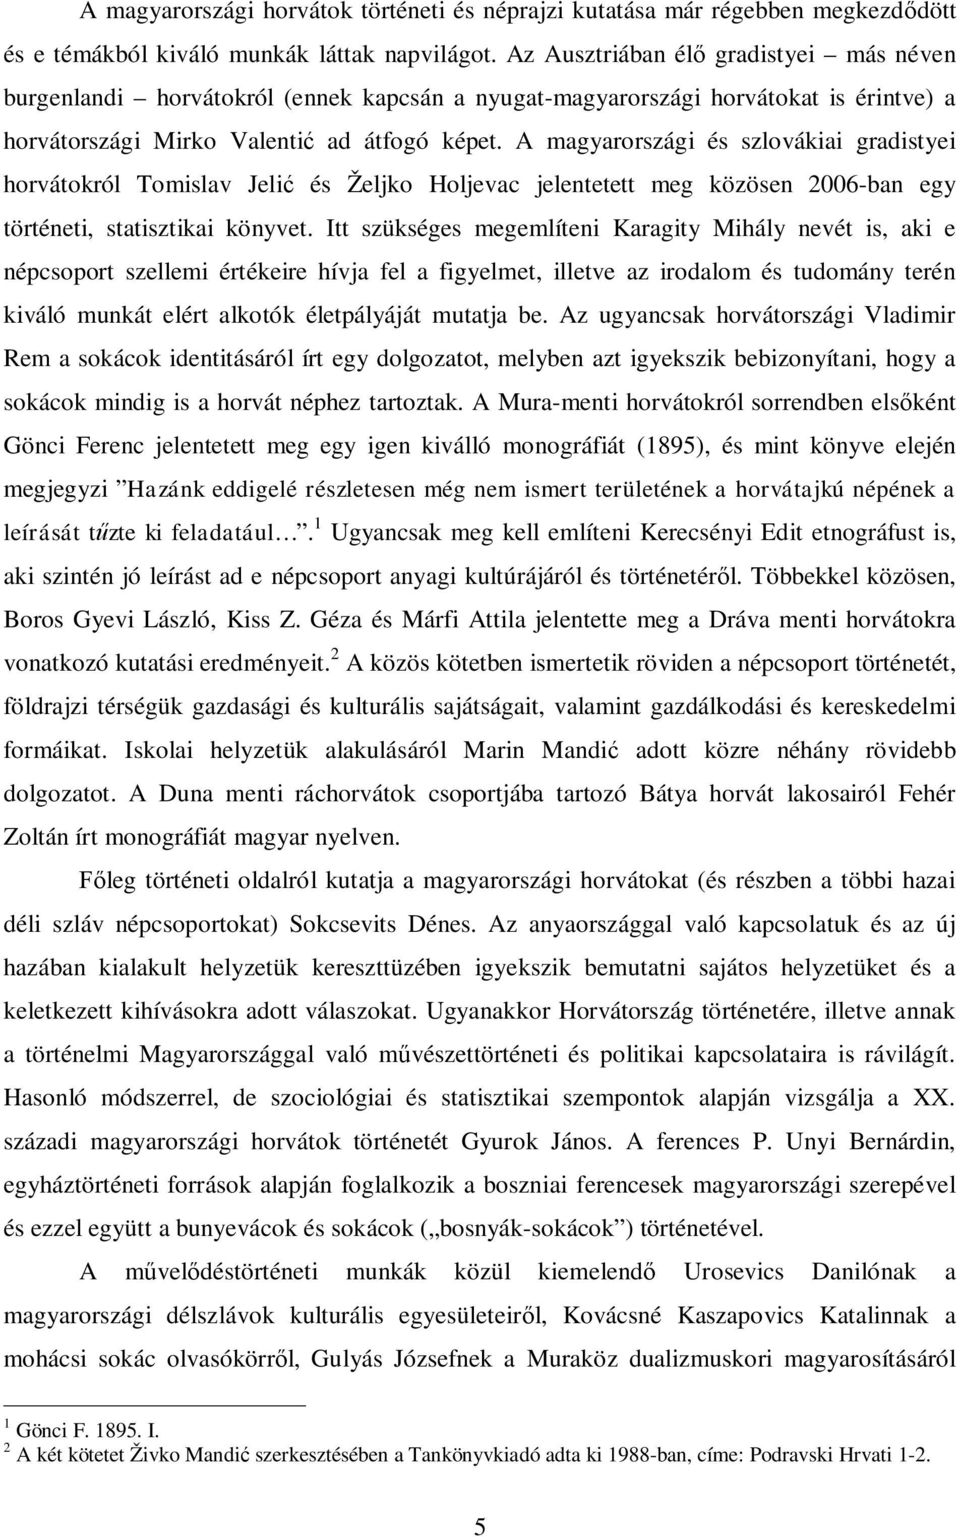 A magyarországi és szlovákiai gradistyei horvátokról Tomislav Jelić és Željko Holjevac jelentetett meg közösen 2006-ban egy történeti, statisztikai könyvet.